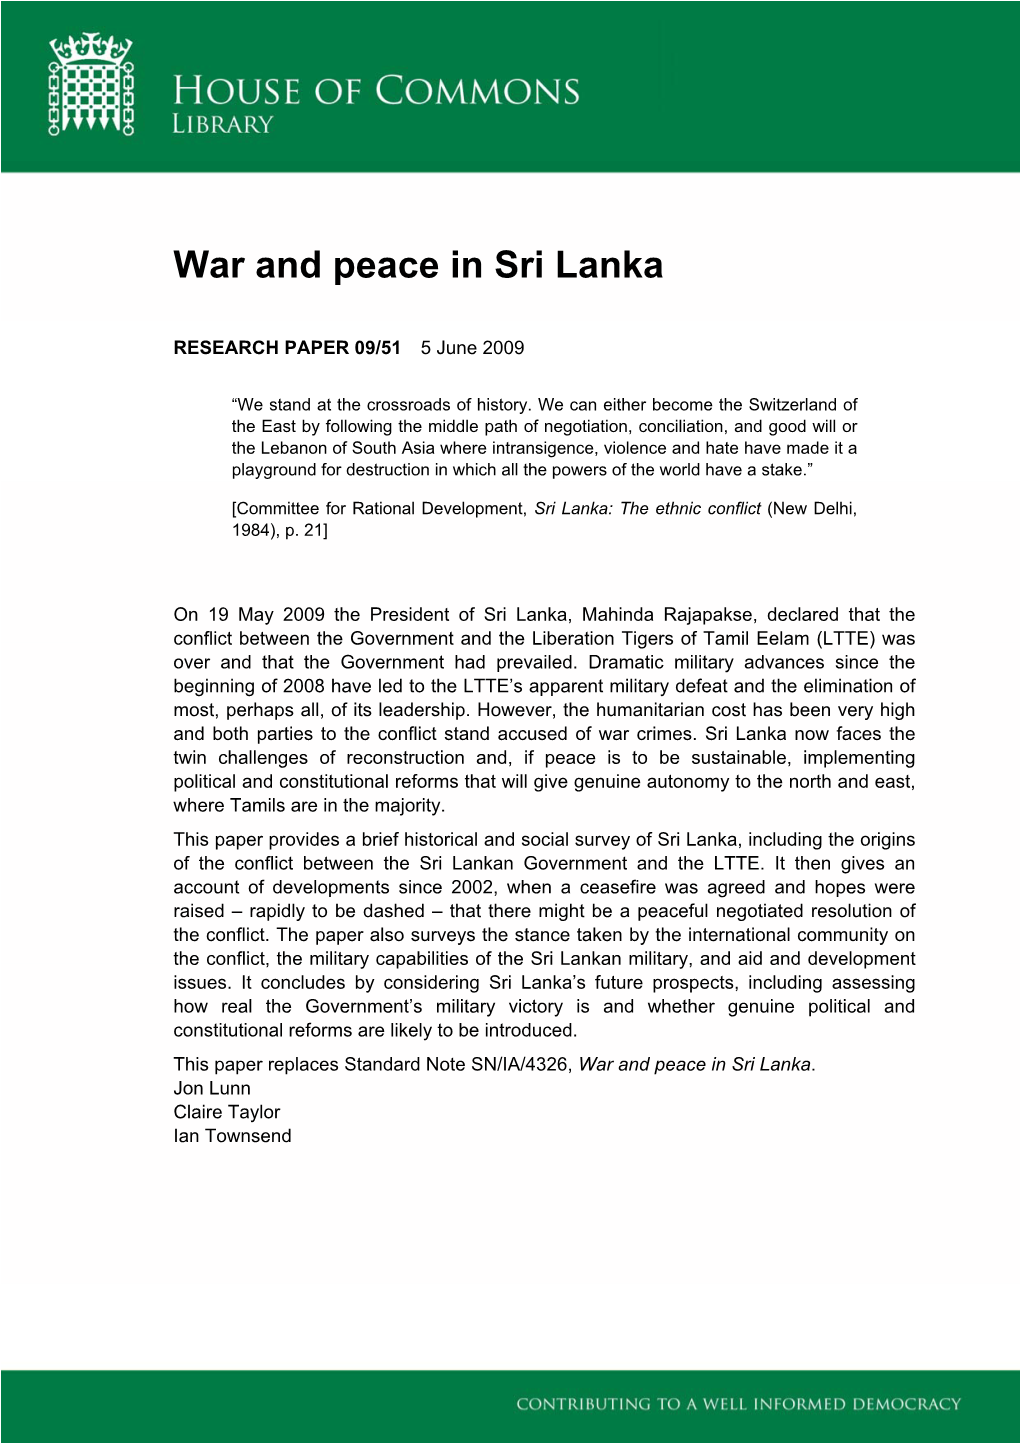 War and Peace in Sri Lanka